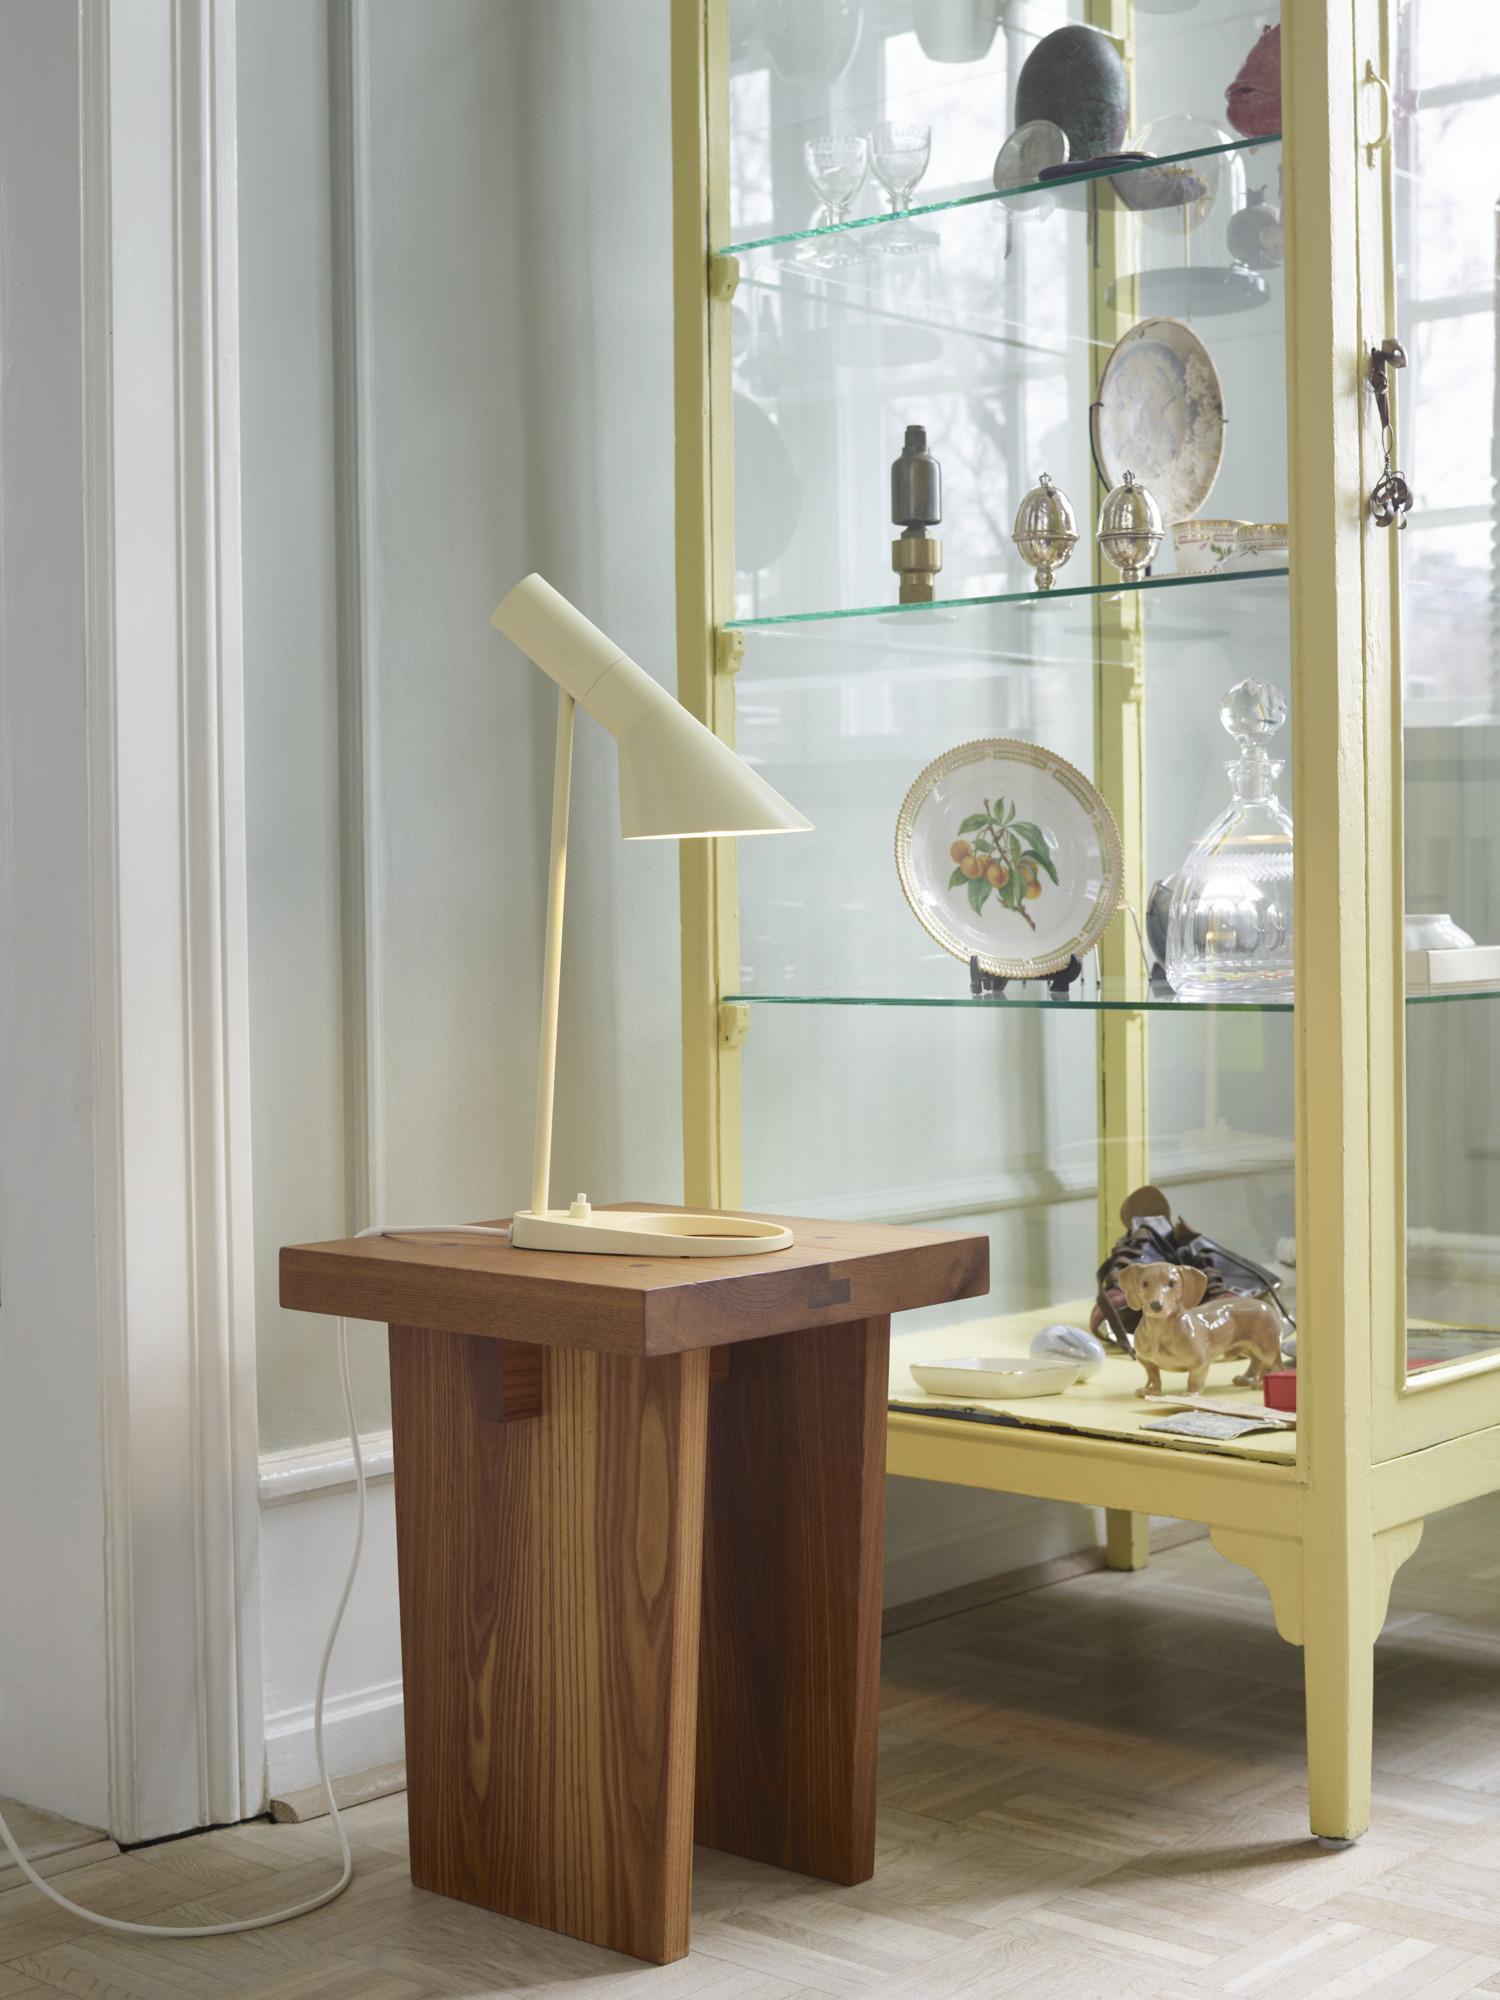 Arne Jacobsen 'AJ Mini' Table Lamp in Dusty Blue for Louis Poulsen For Sale 6